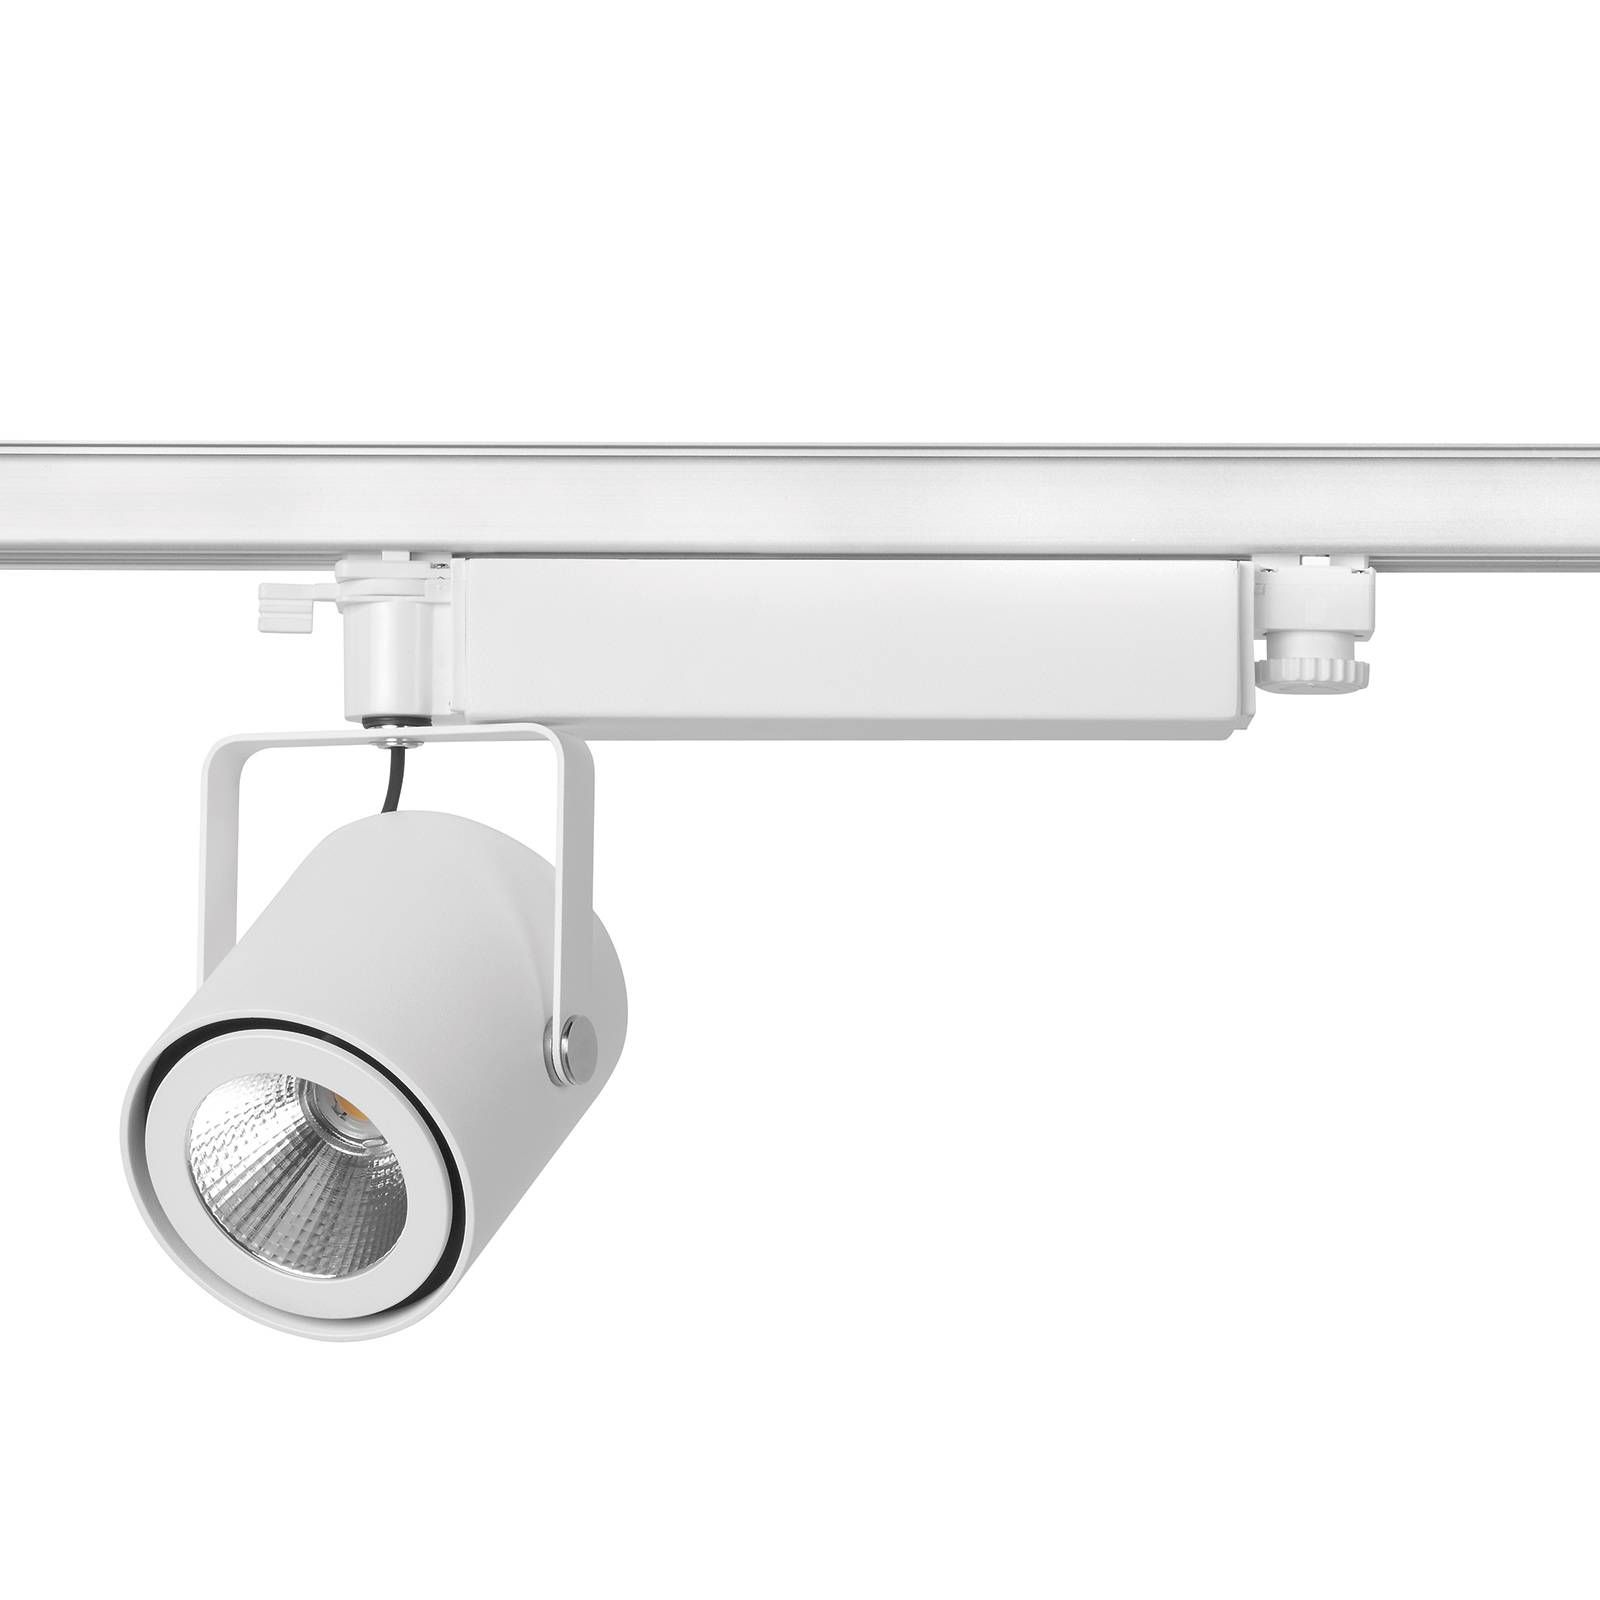 OMS Flexibilná koľajnica s LED Avior Surfaced, hliník, oceľ, sklo, 19W, P: 29.5 cm, L: 12.1 cm, K: 22.2cm